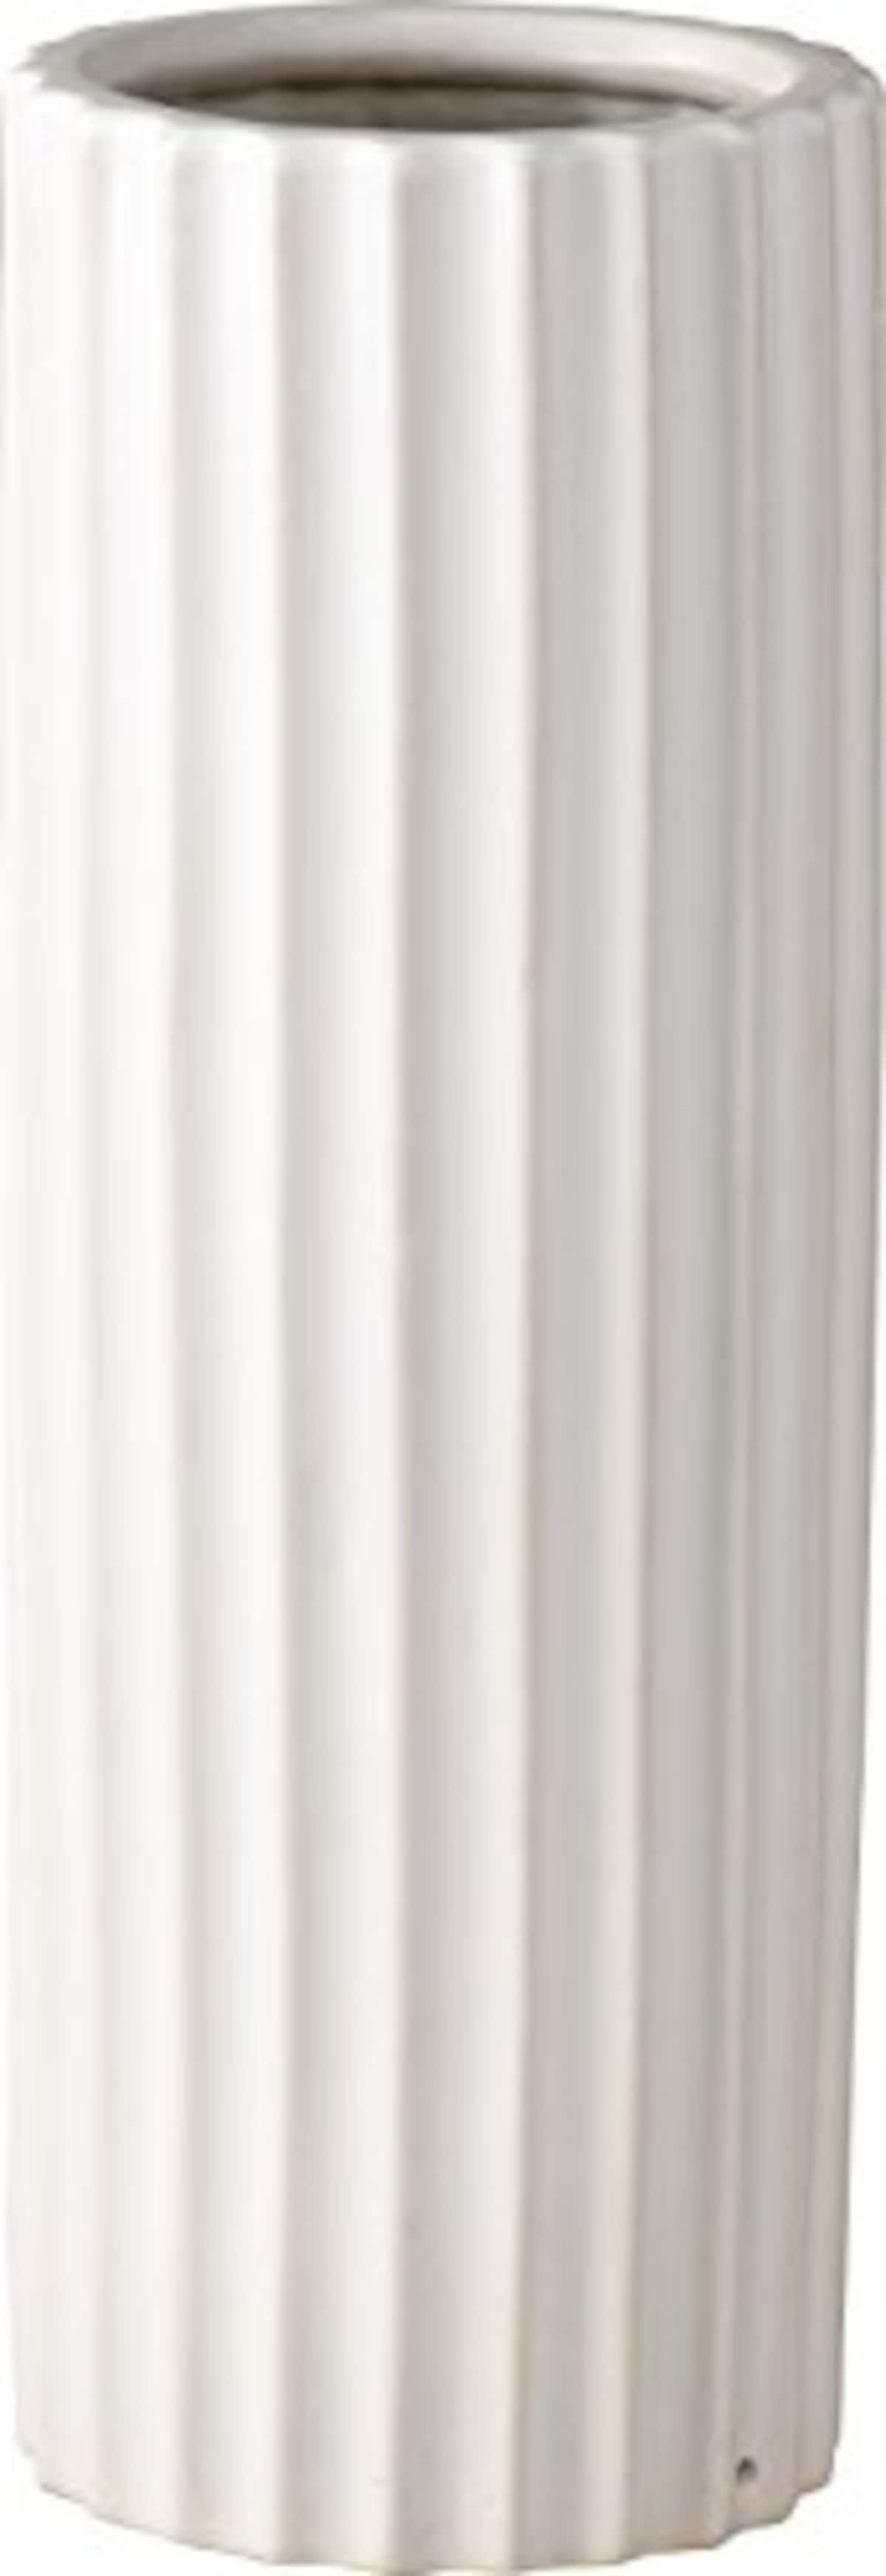 パール金属 陶器 傘立て バウム 丸 ホワイト N-8067画像